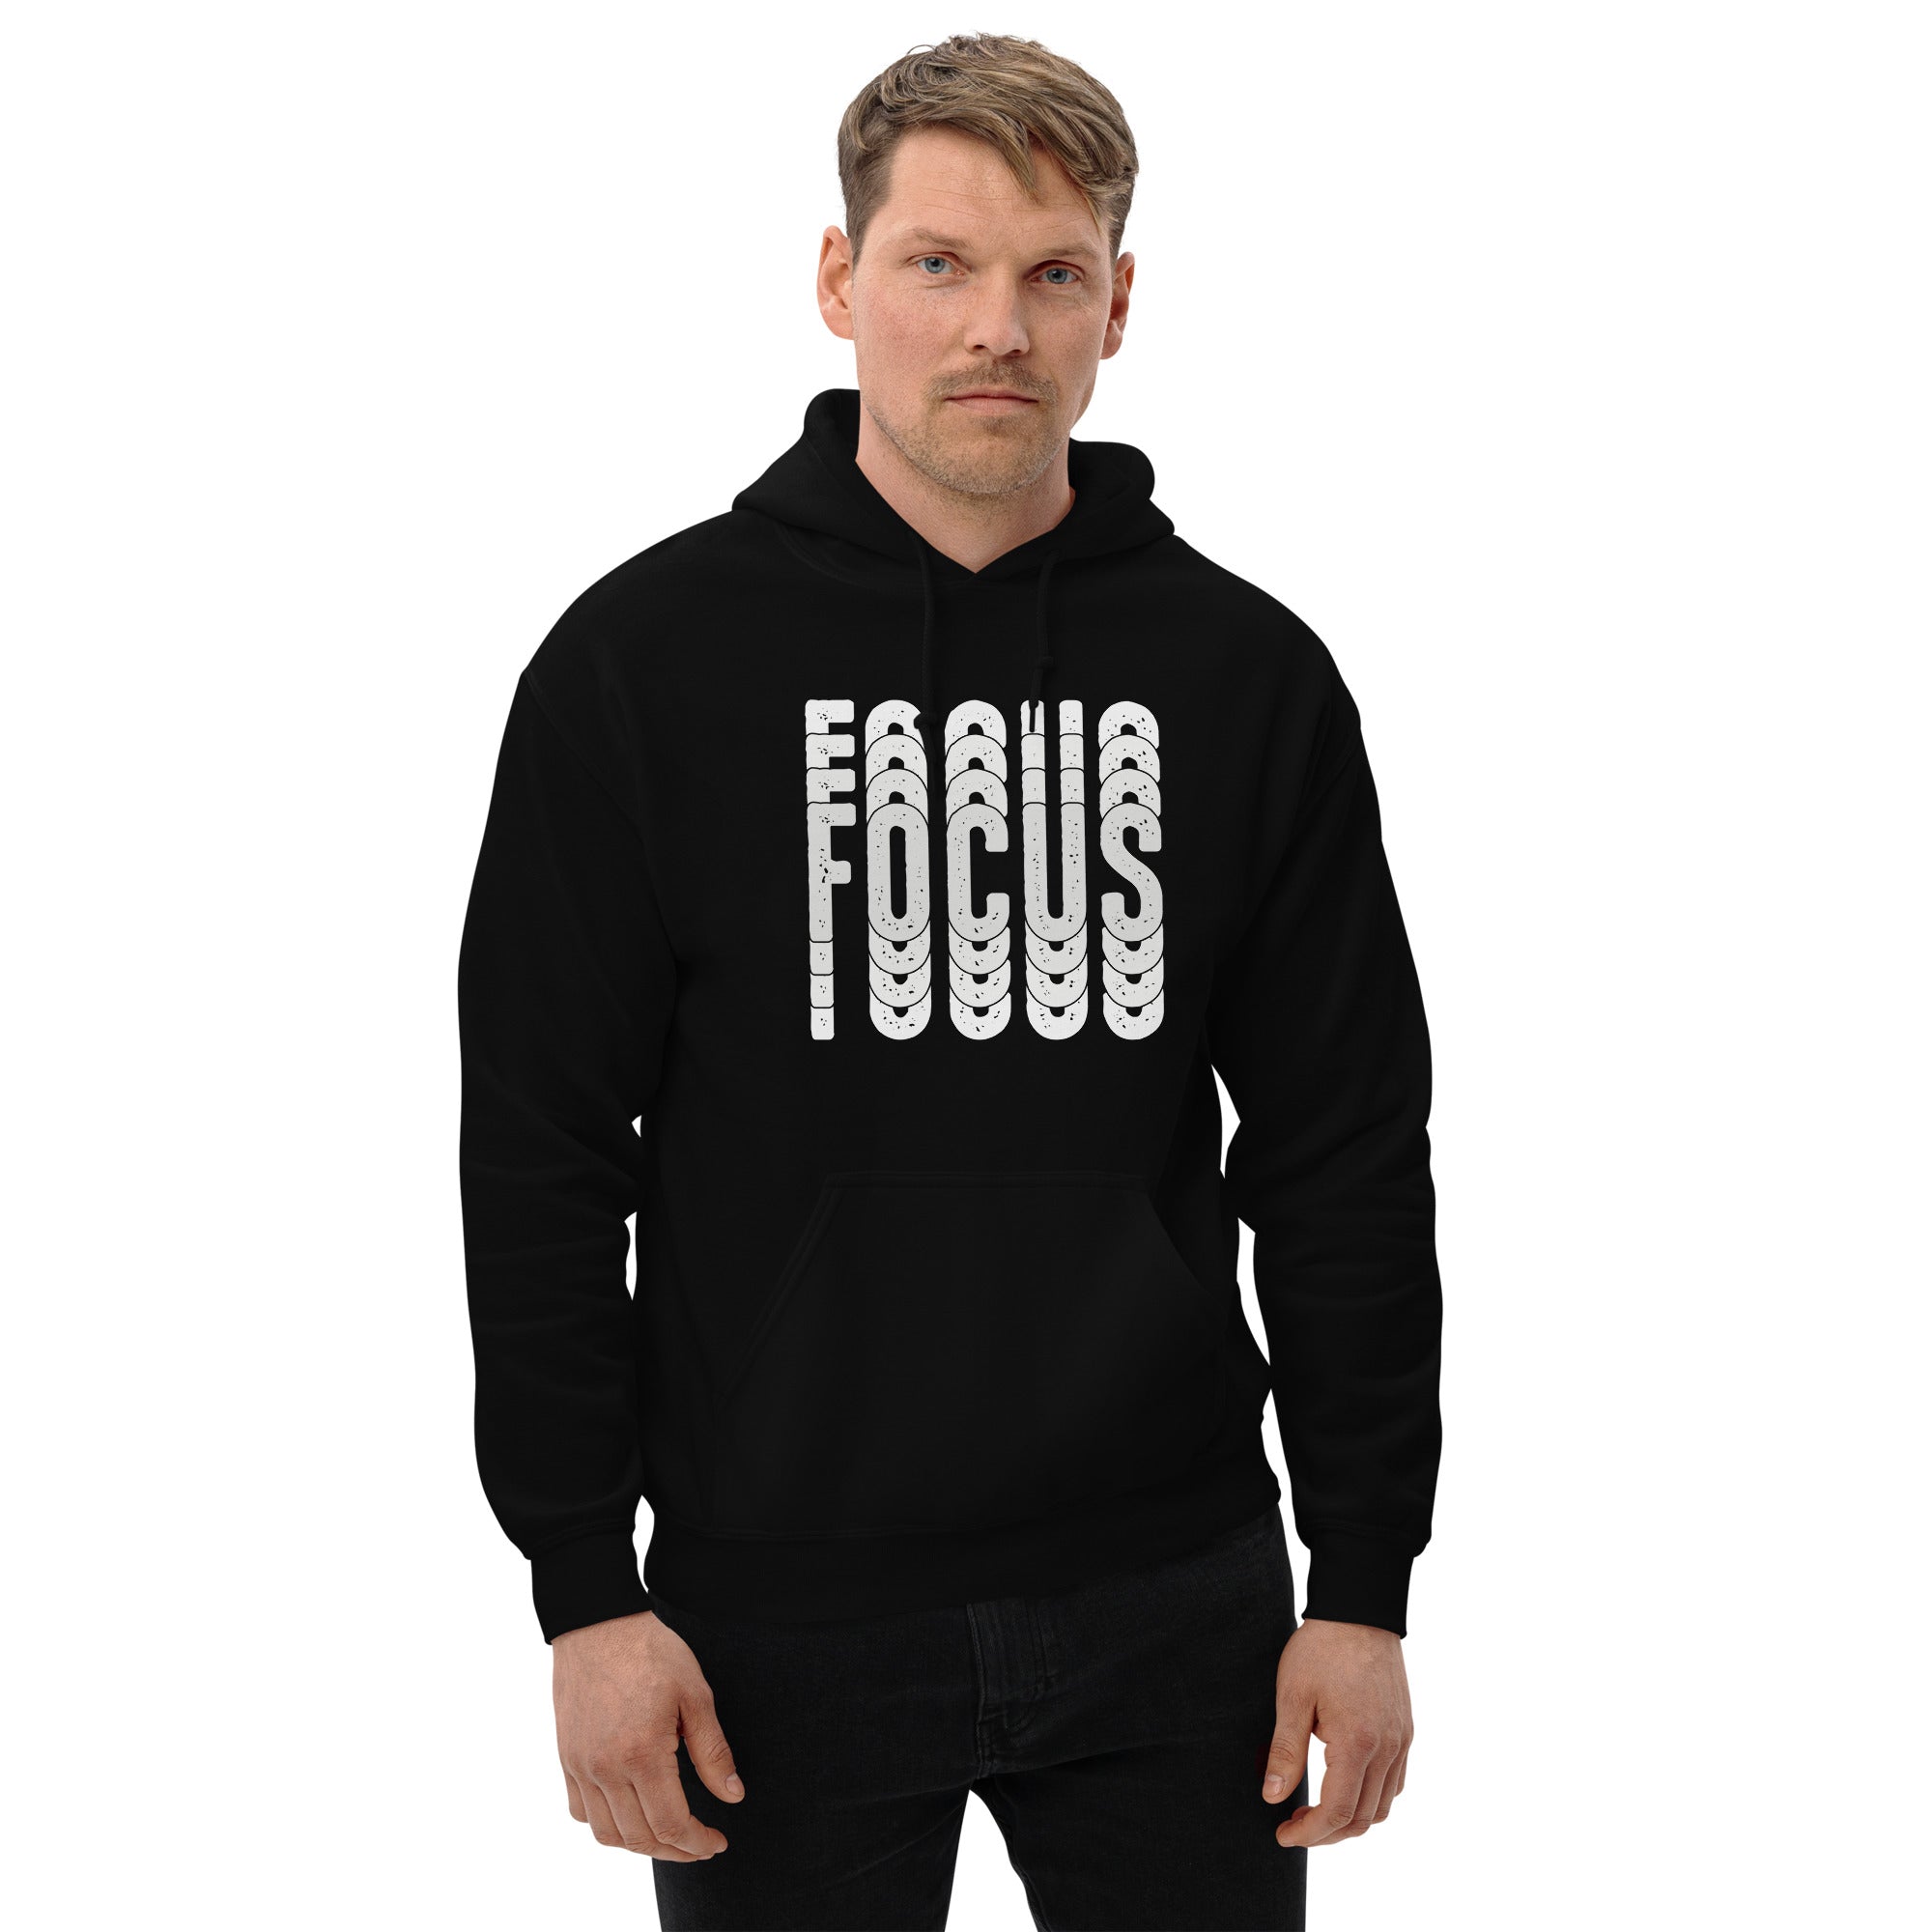 Focus - Unisex Hoodie